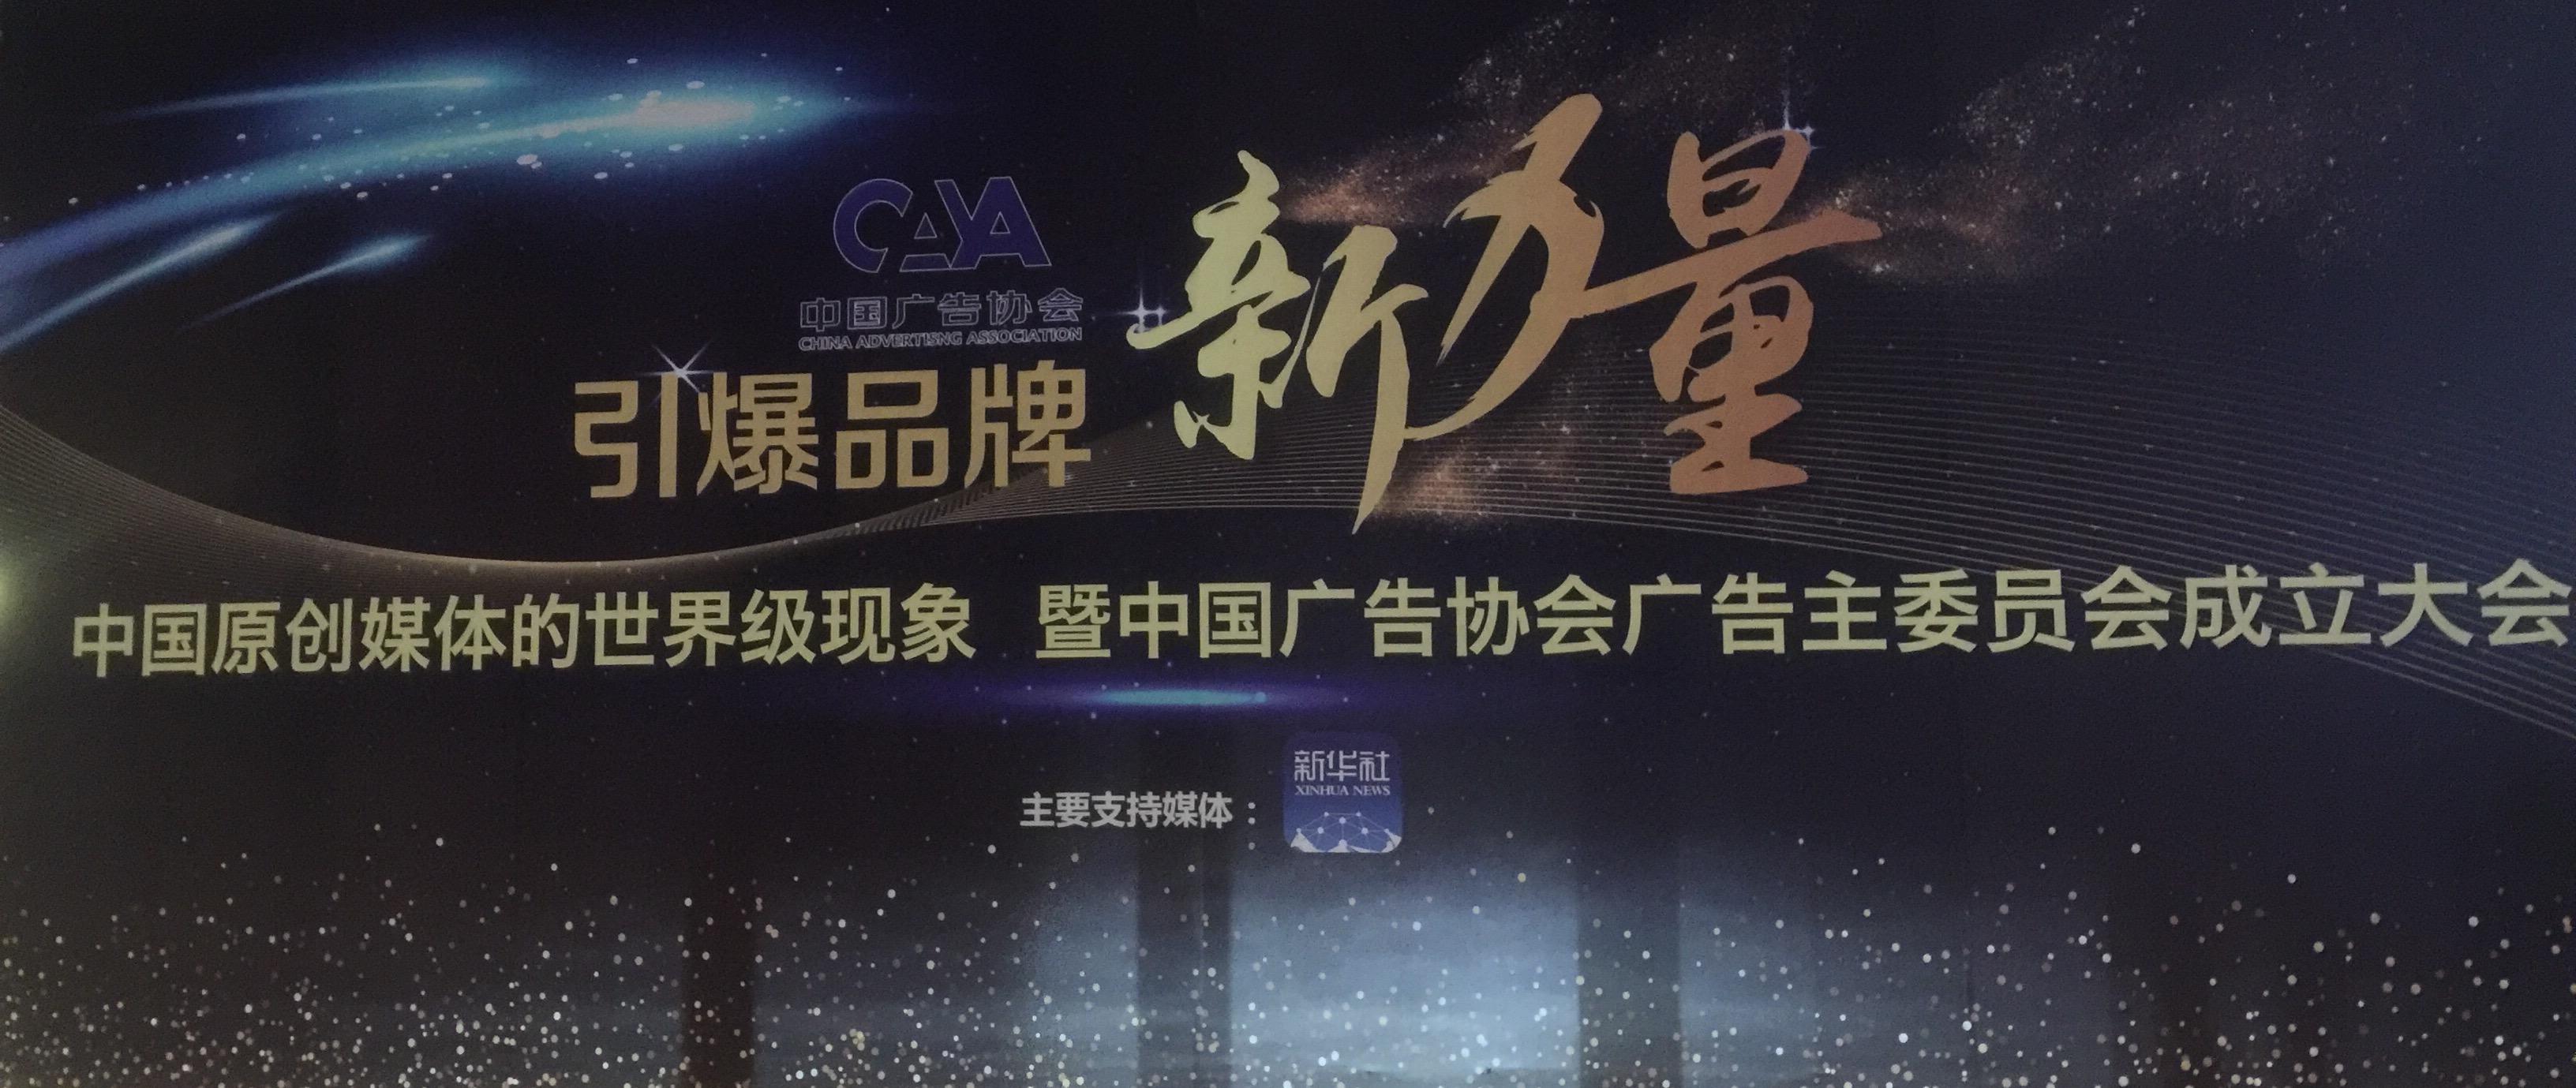 加多宝荣耀成为中国广告协会广告主委员会副主任单位1